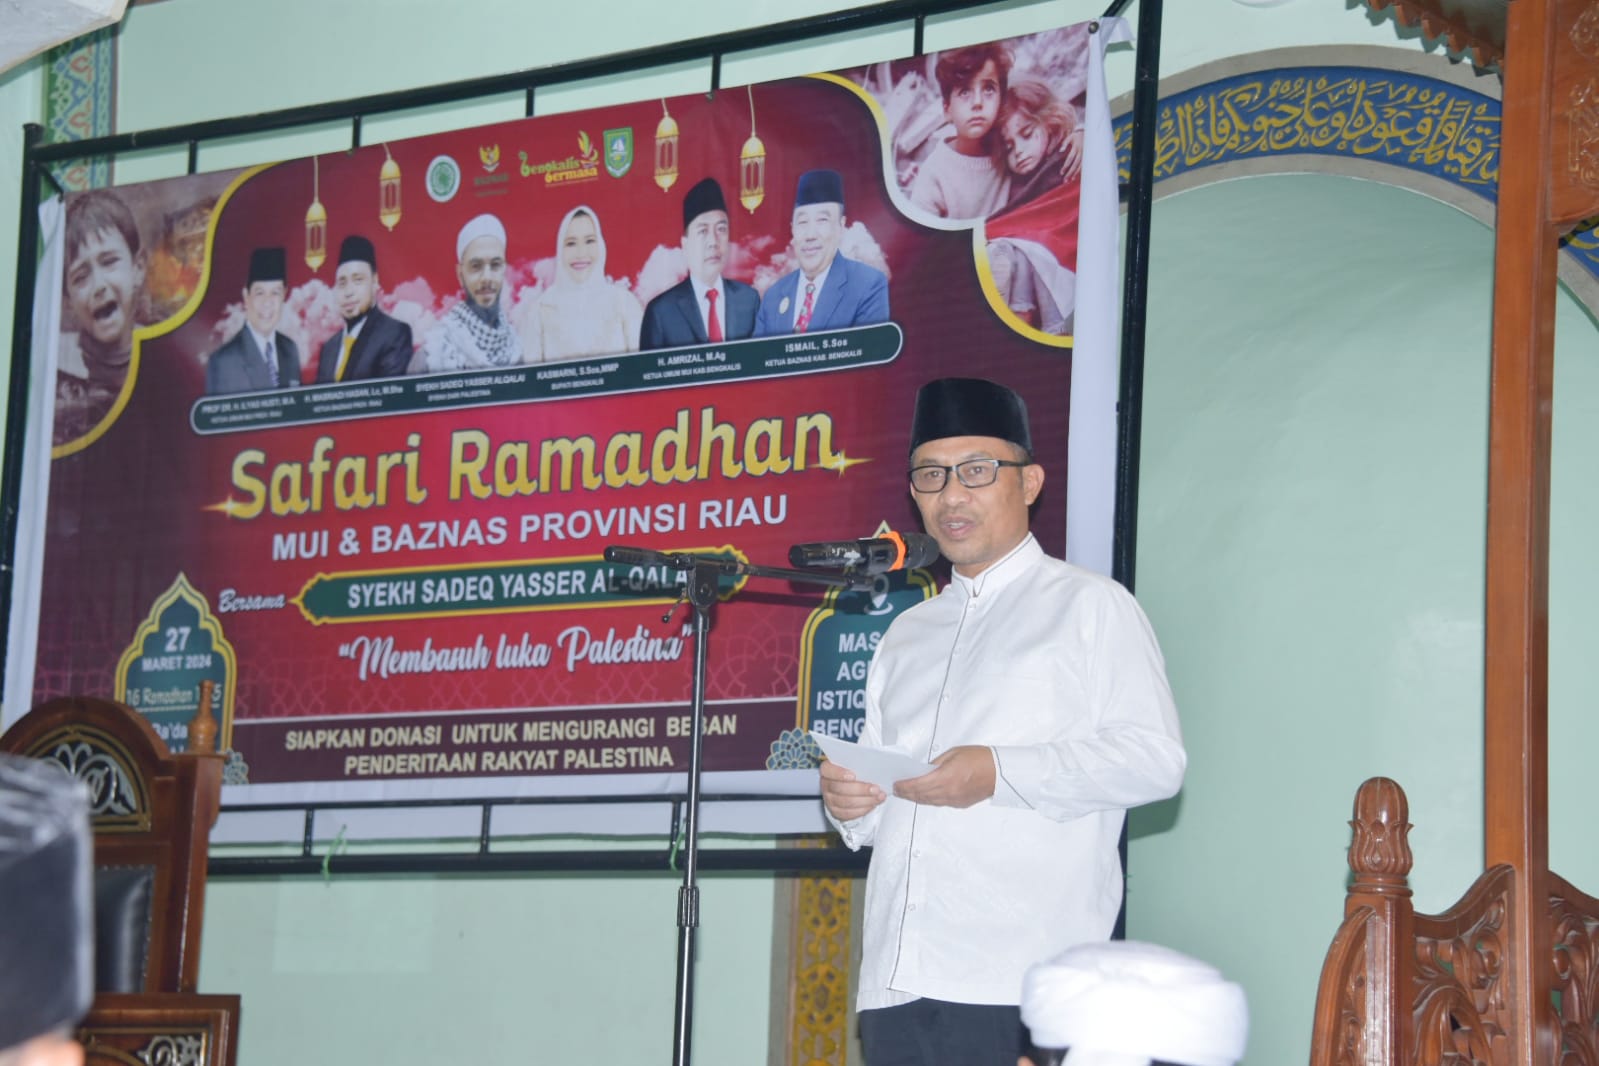 Bupati Kasmarni Sambut Baik Safari Ramadhan MUI dan Baznas Riau, Dalam Rangka Basuh Luka Palestina